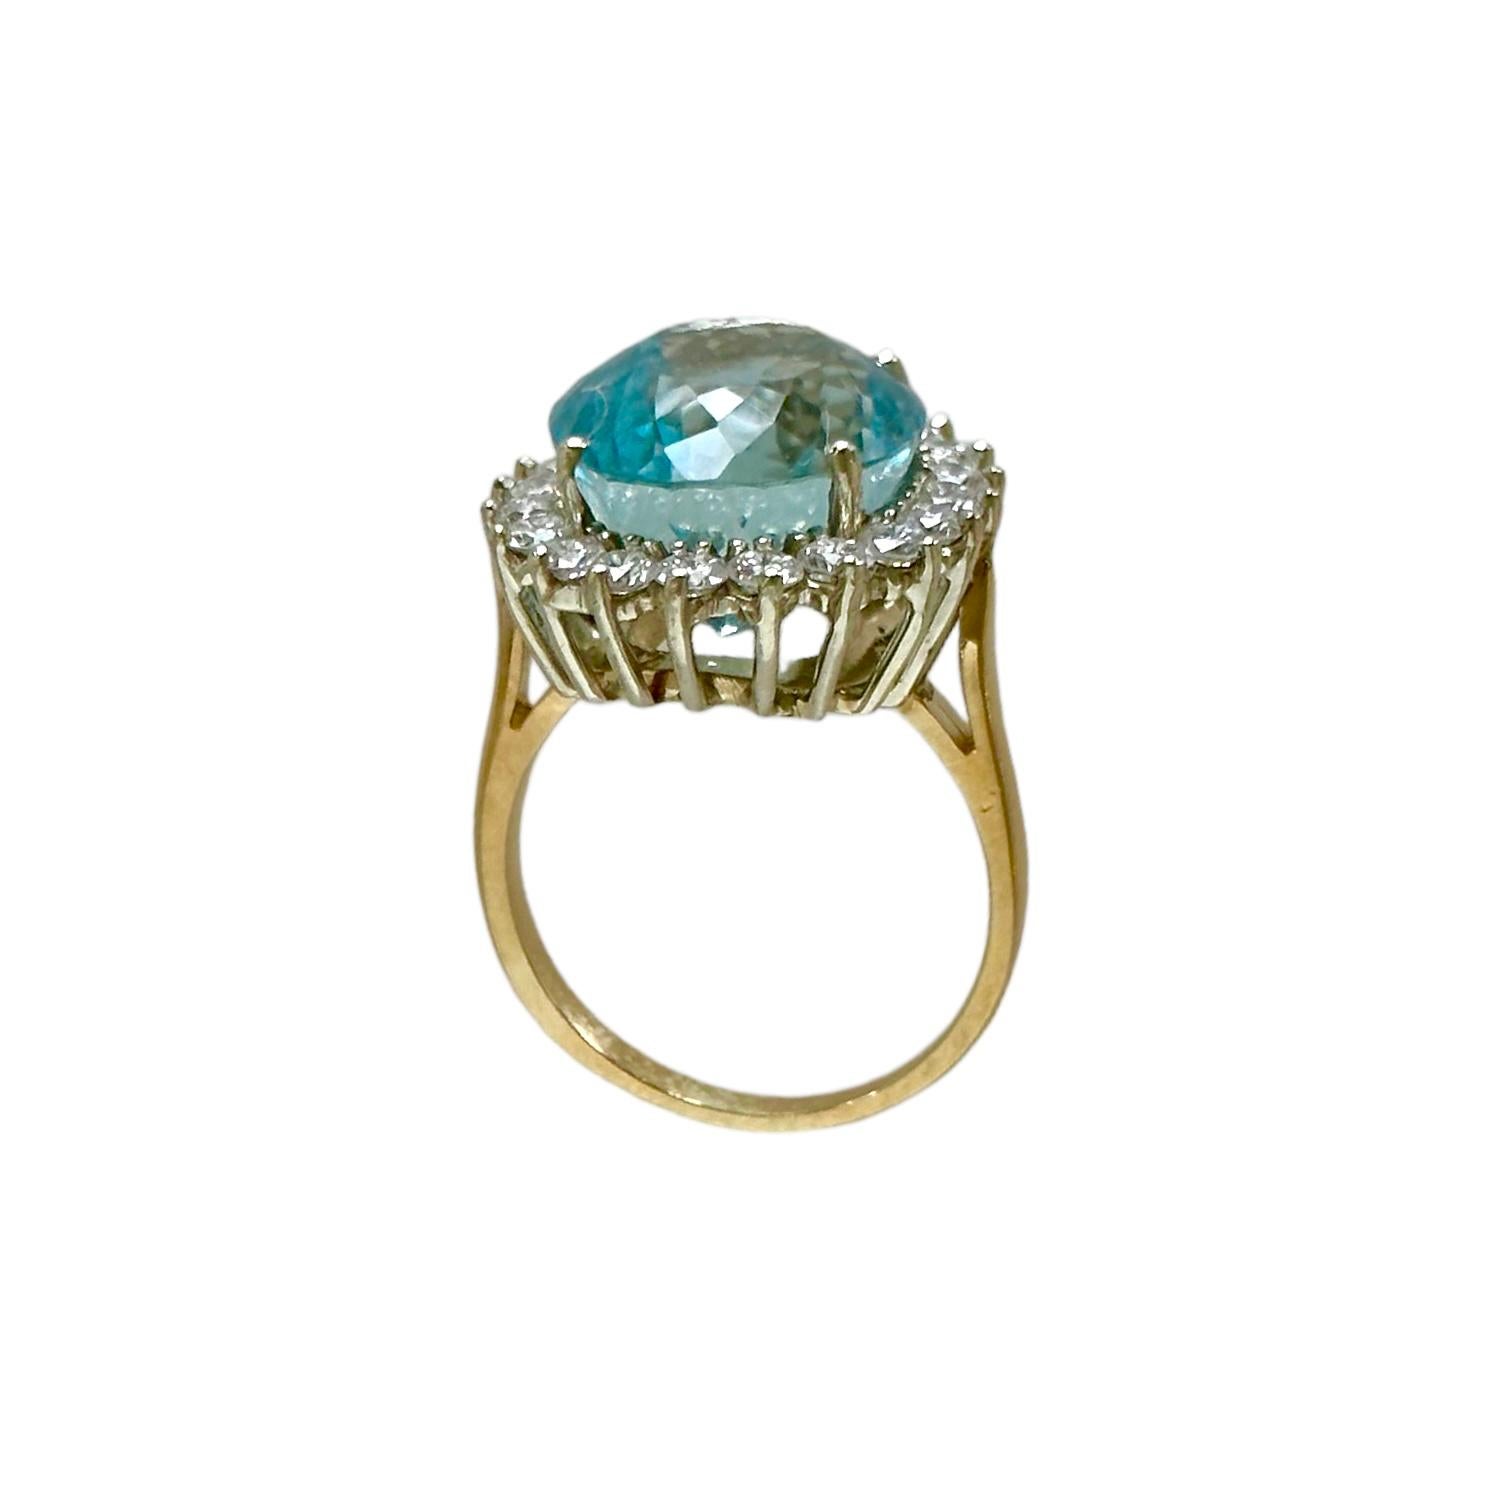 1.5 carat aquamarine ring